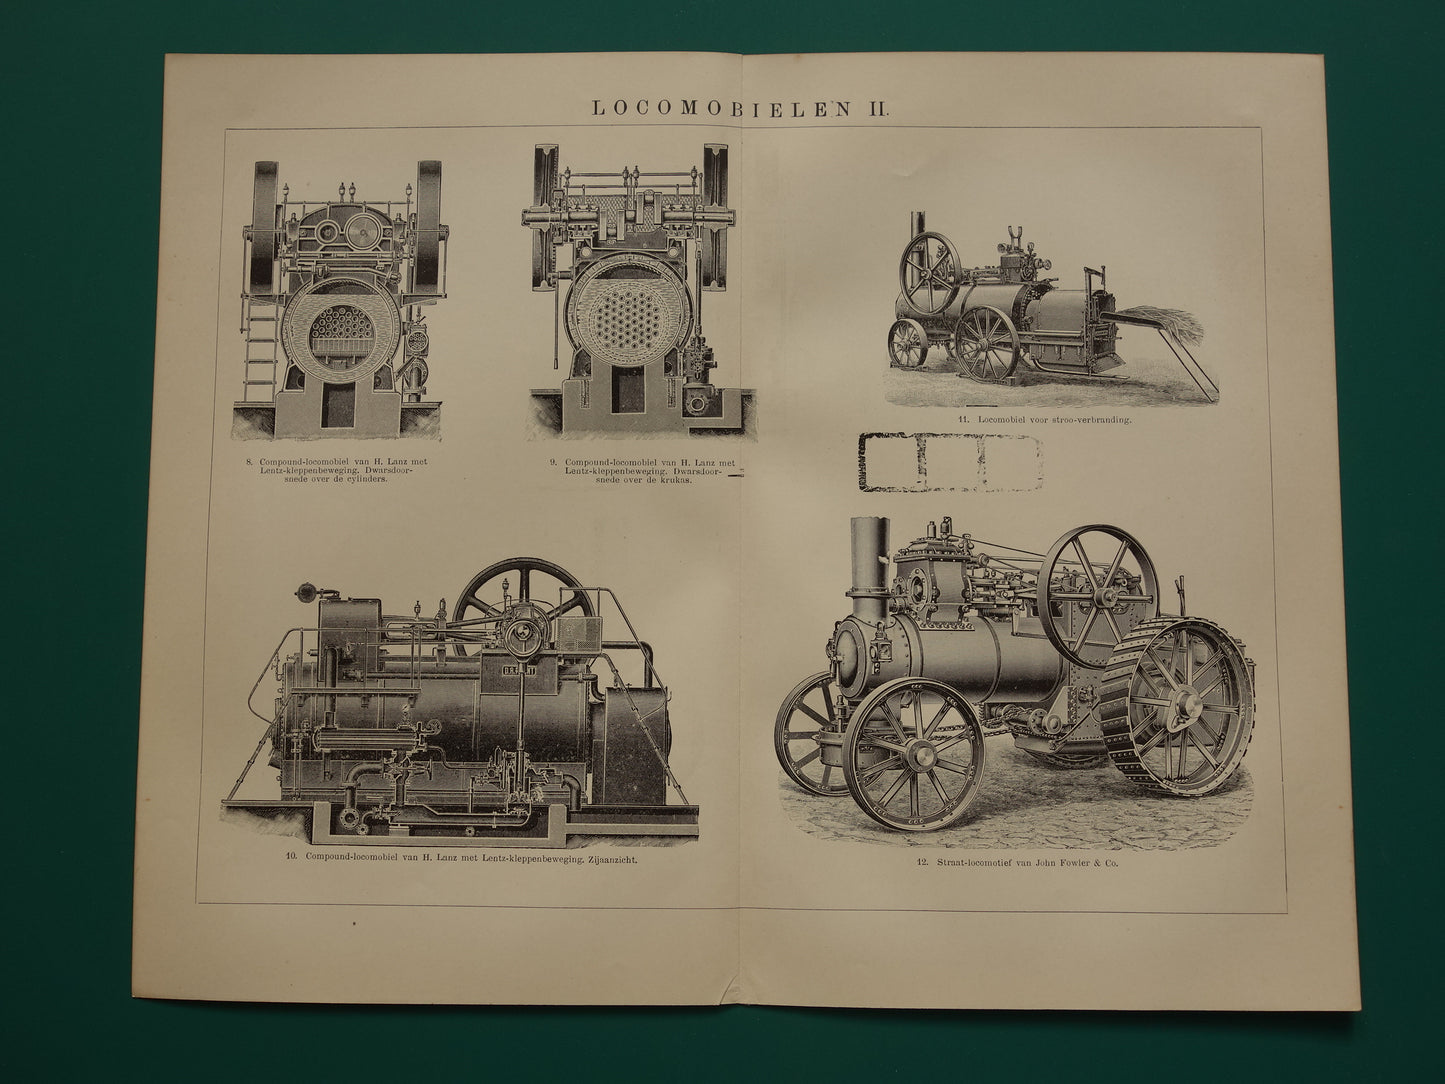 TRACTIEMACHINE oude technologie prent uit het jaar 1909 over de mobiele stoommachine originele antieke techniek illustratie - vintage prints locomobiel